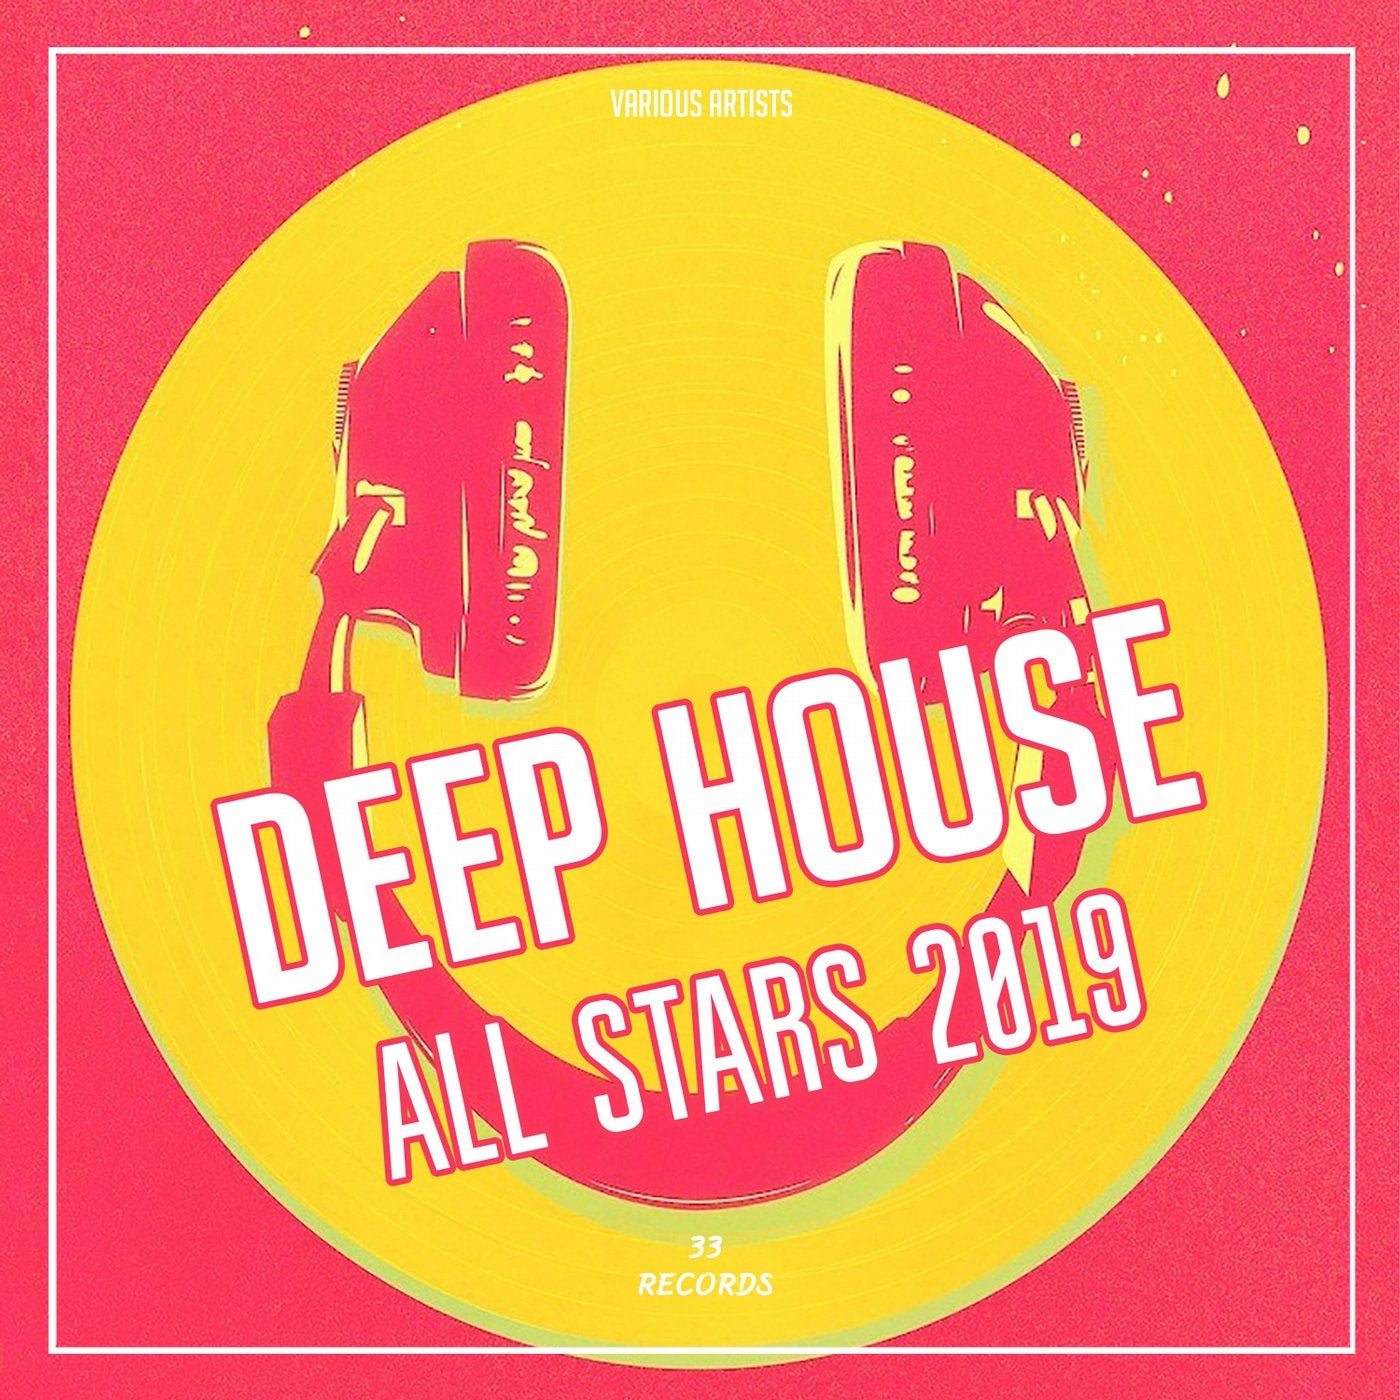 Deep House All Stars 2019